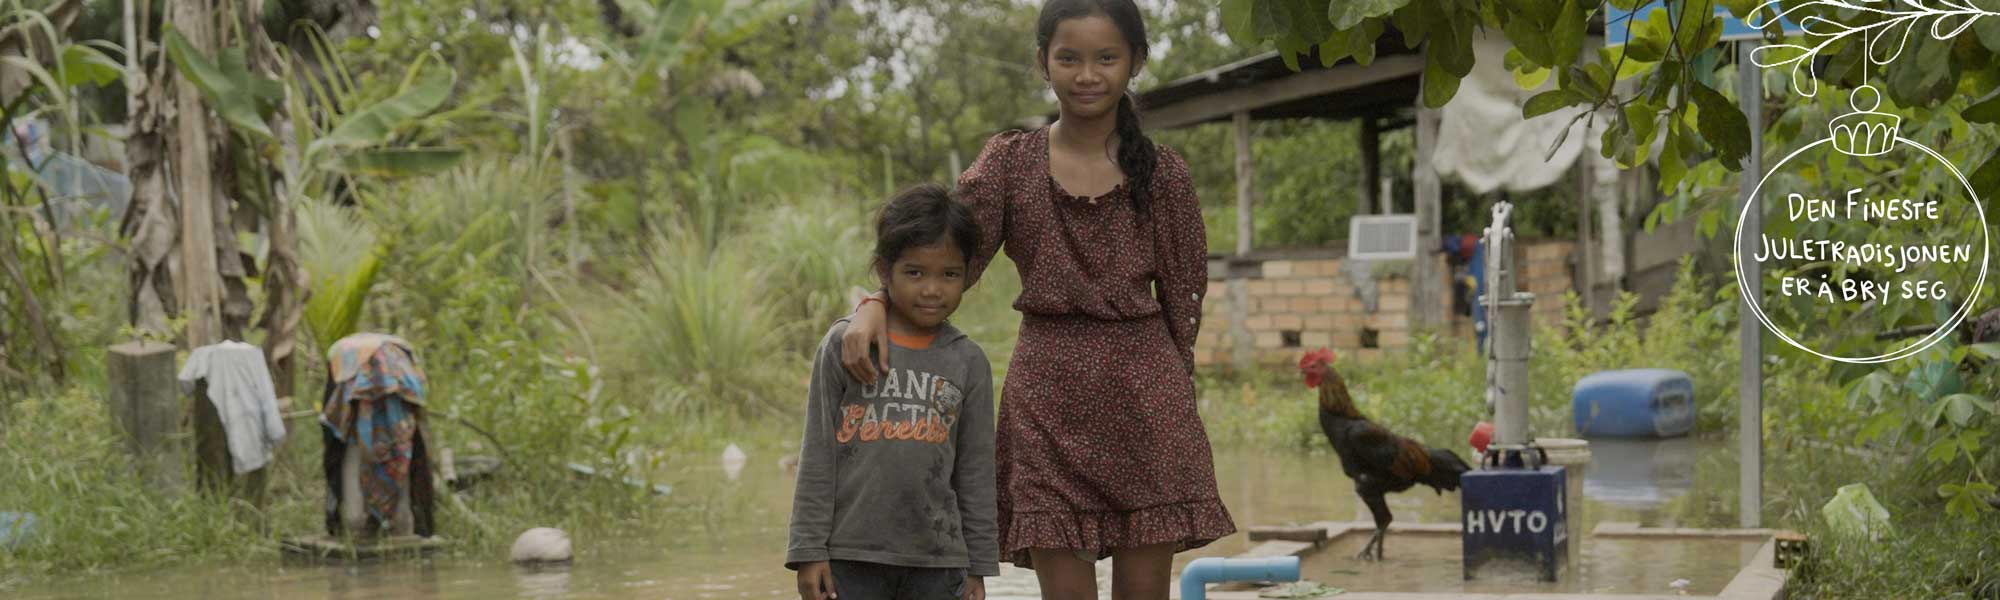 Khnhung og Chaet fra Kambodsja.